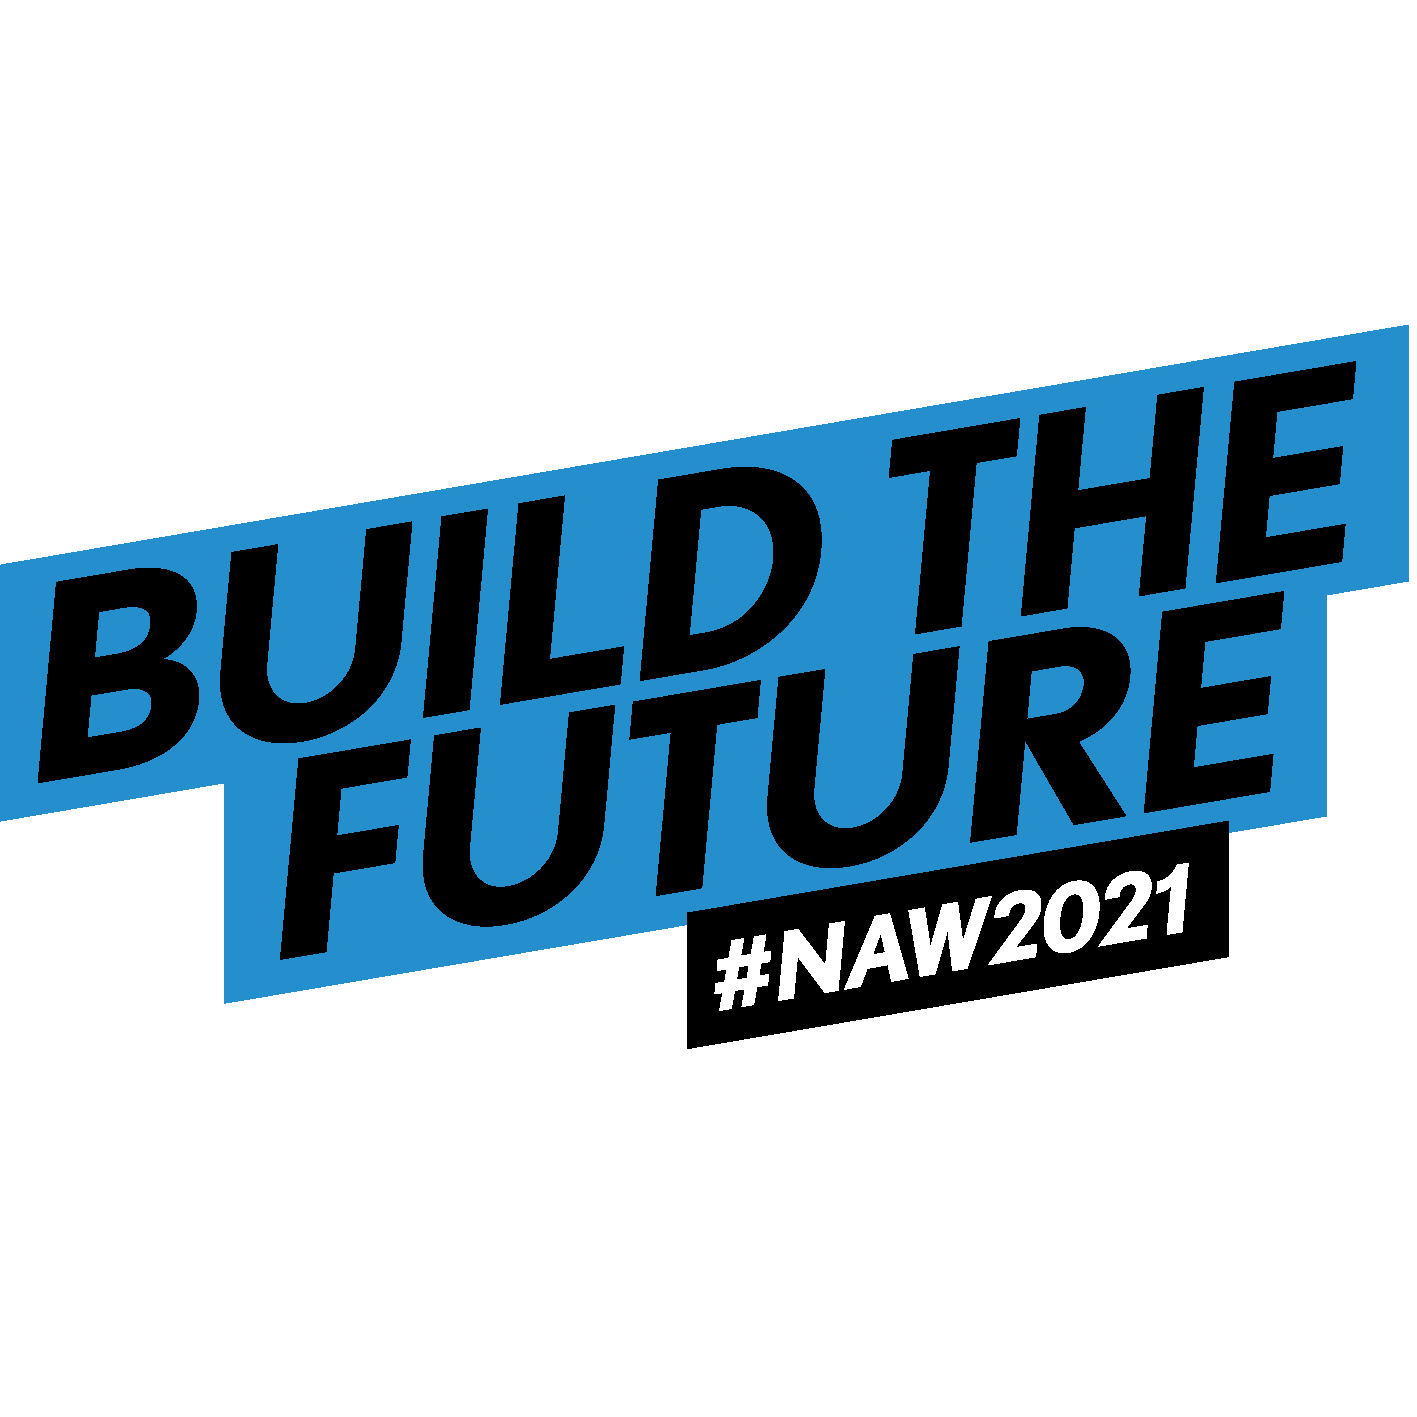 Build the future #NAW2021